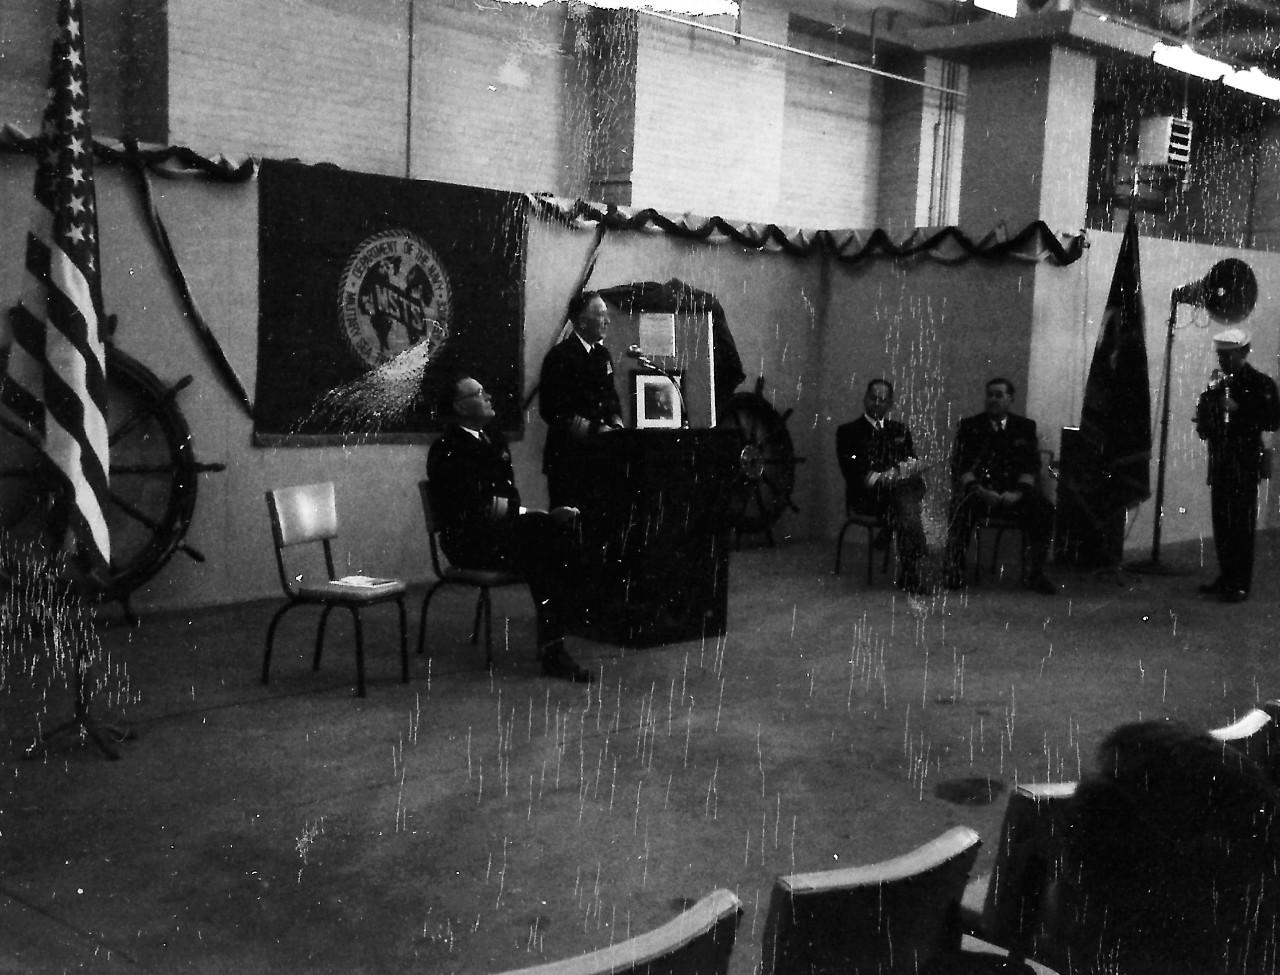 NMUSN-19: USNS James M. Gilliss presentation at Naval Historical Display Center, Washington Navy Yard, Washington, D.C. December 14, 1962. Vice Admiral Roay A. Gano, USN, gives remarks during the presentation at the Naval Historical Display Cente...